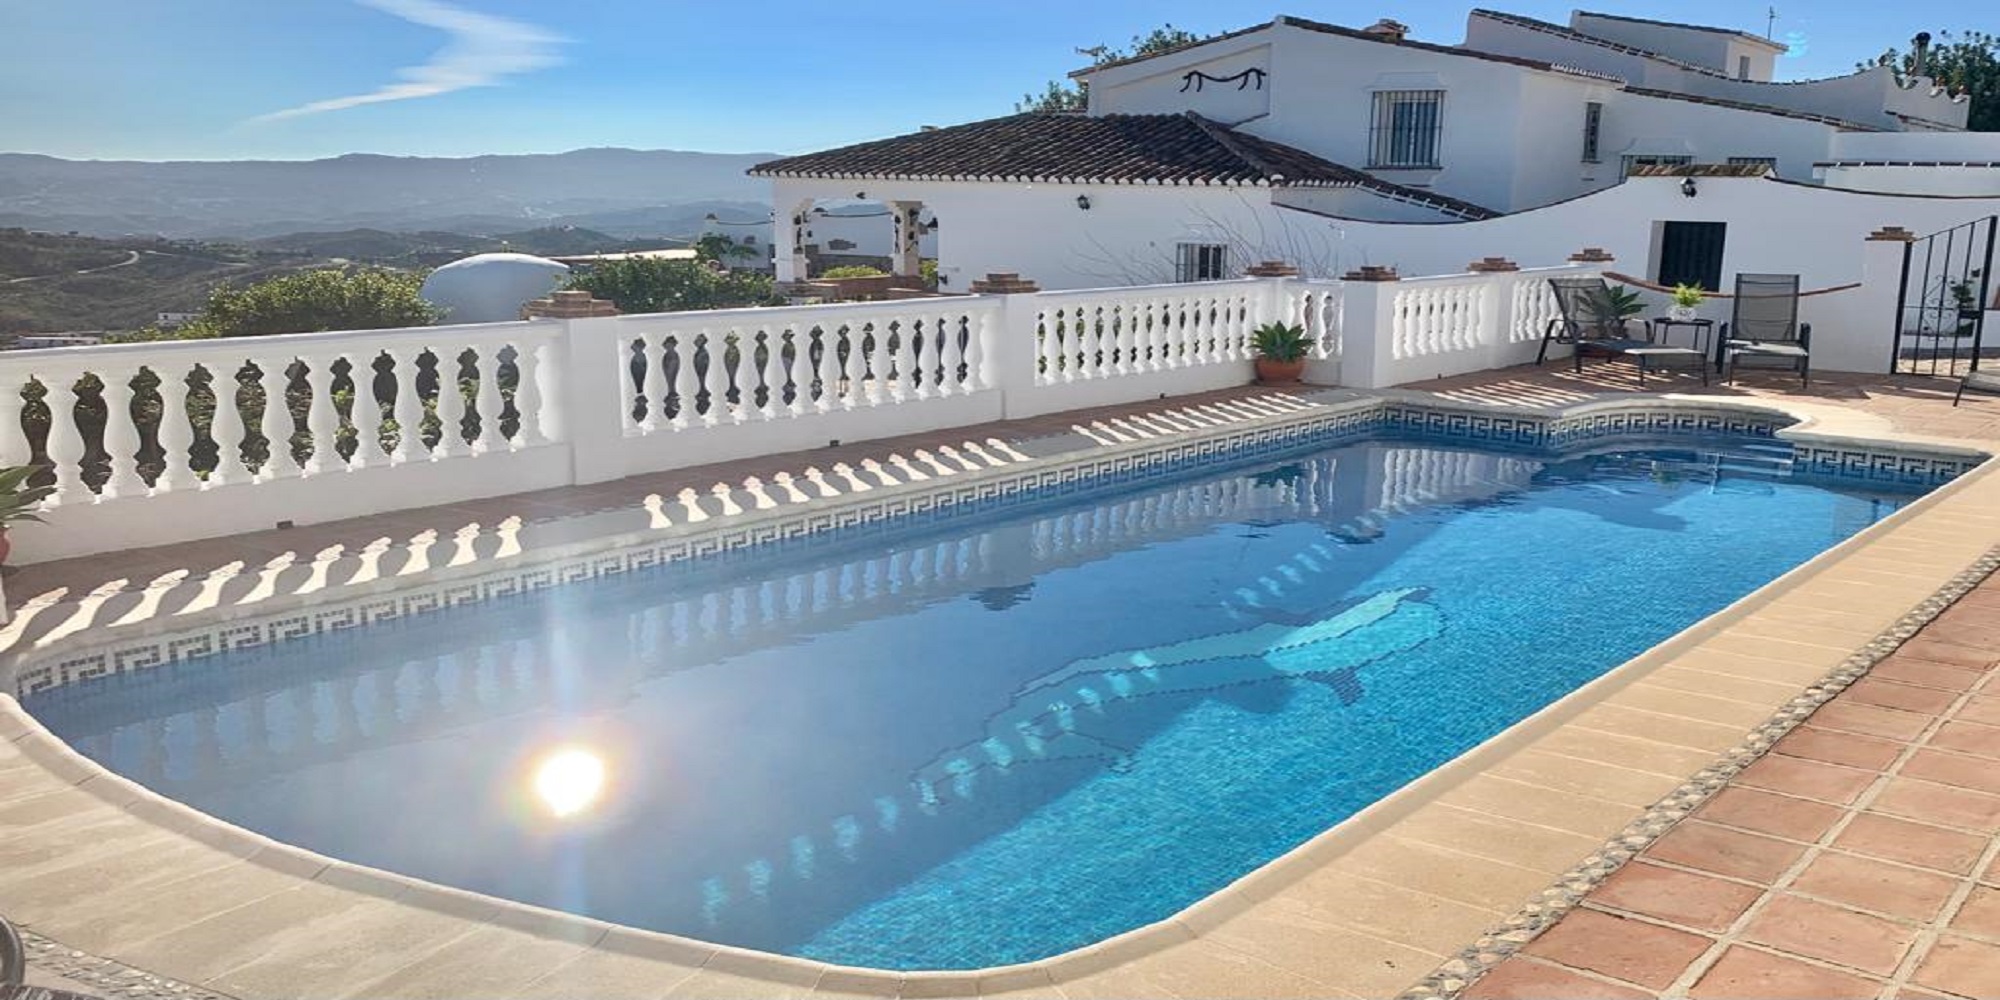 Anotar Salida hacia Brillante Home - Villas in Mijas Spain